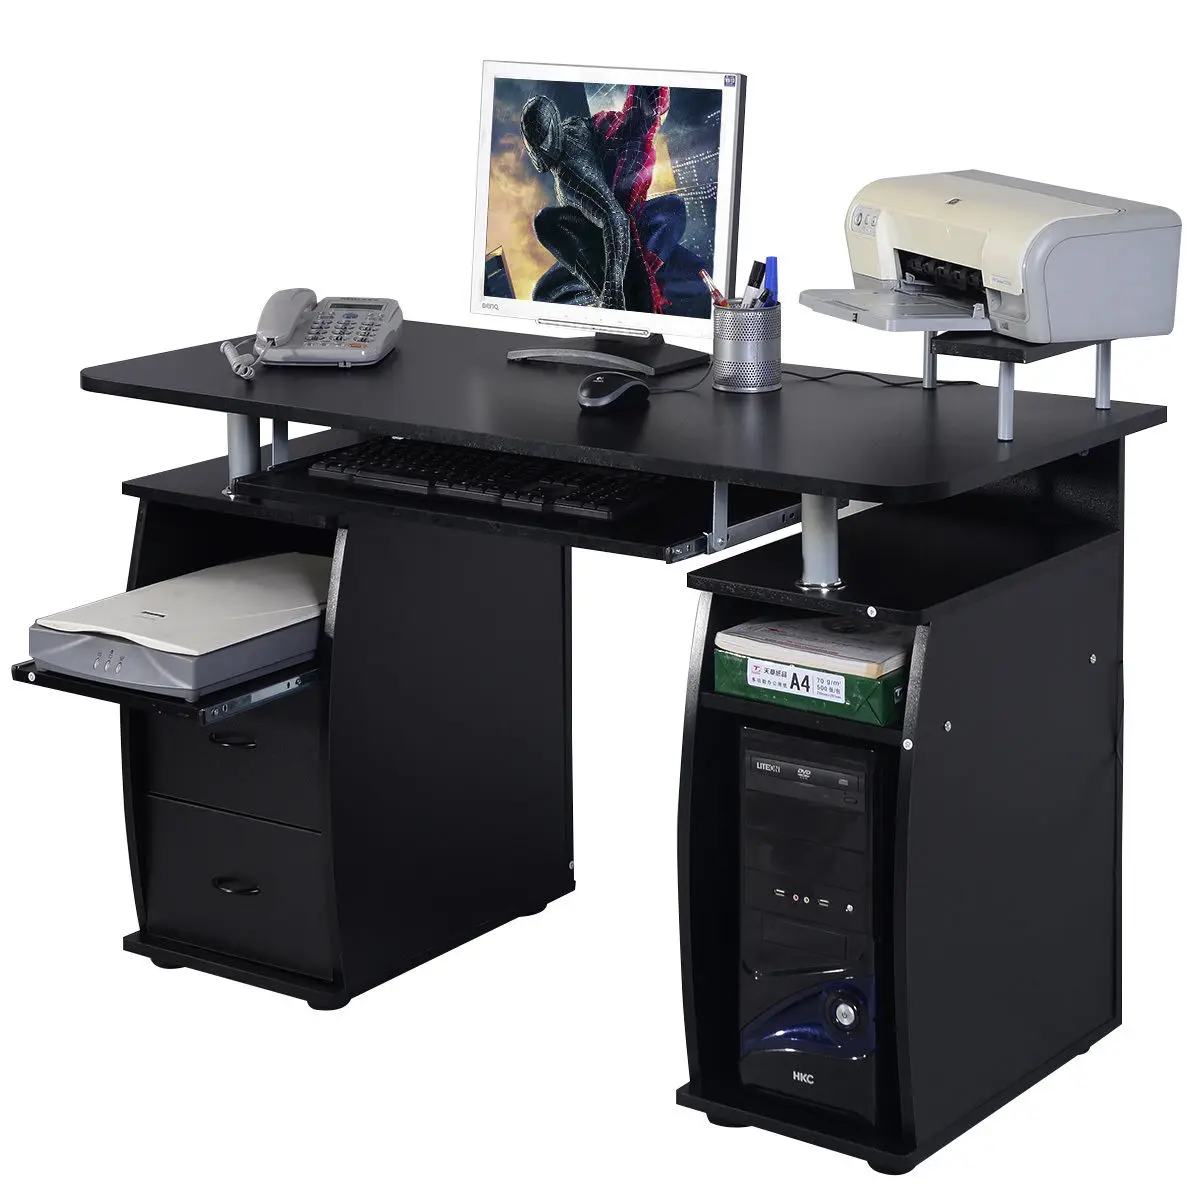 Costway компьютерный стол для компьютера рабочая станция офисный домашний монитор и полка для принтера мебель черный